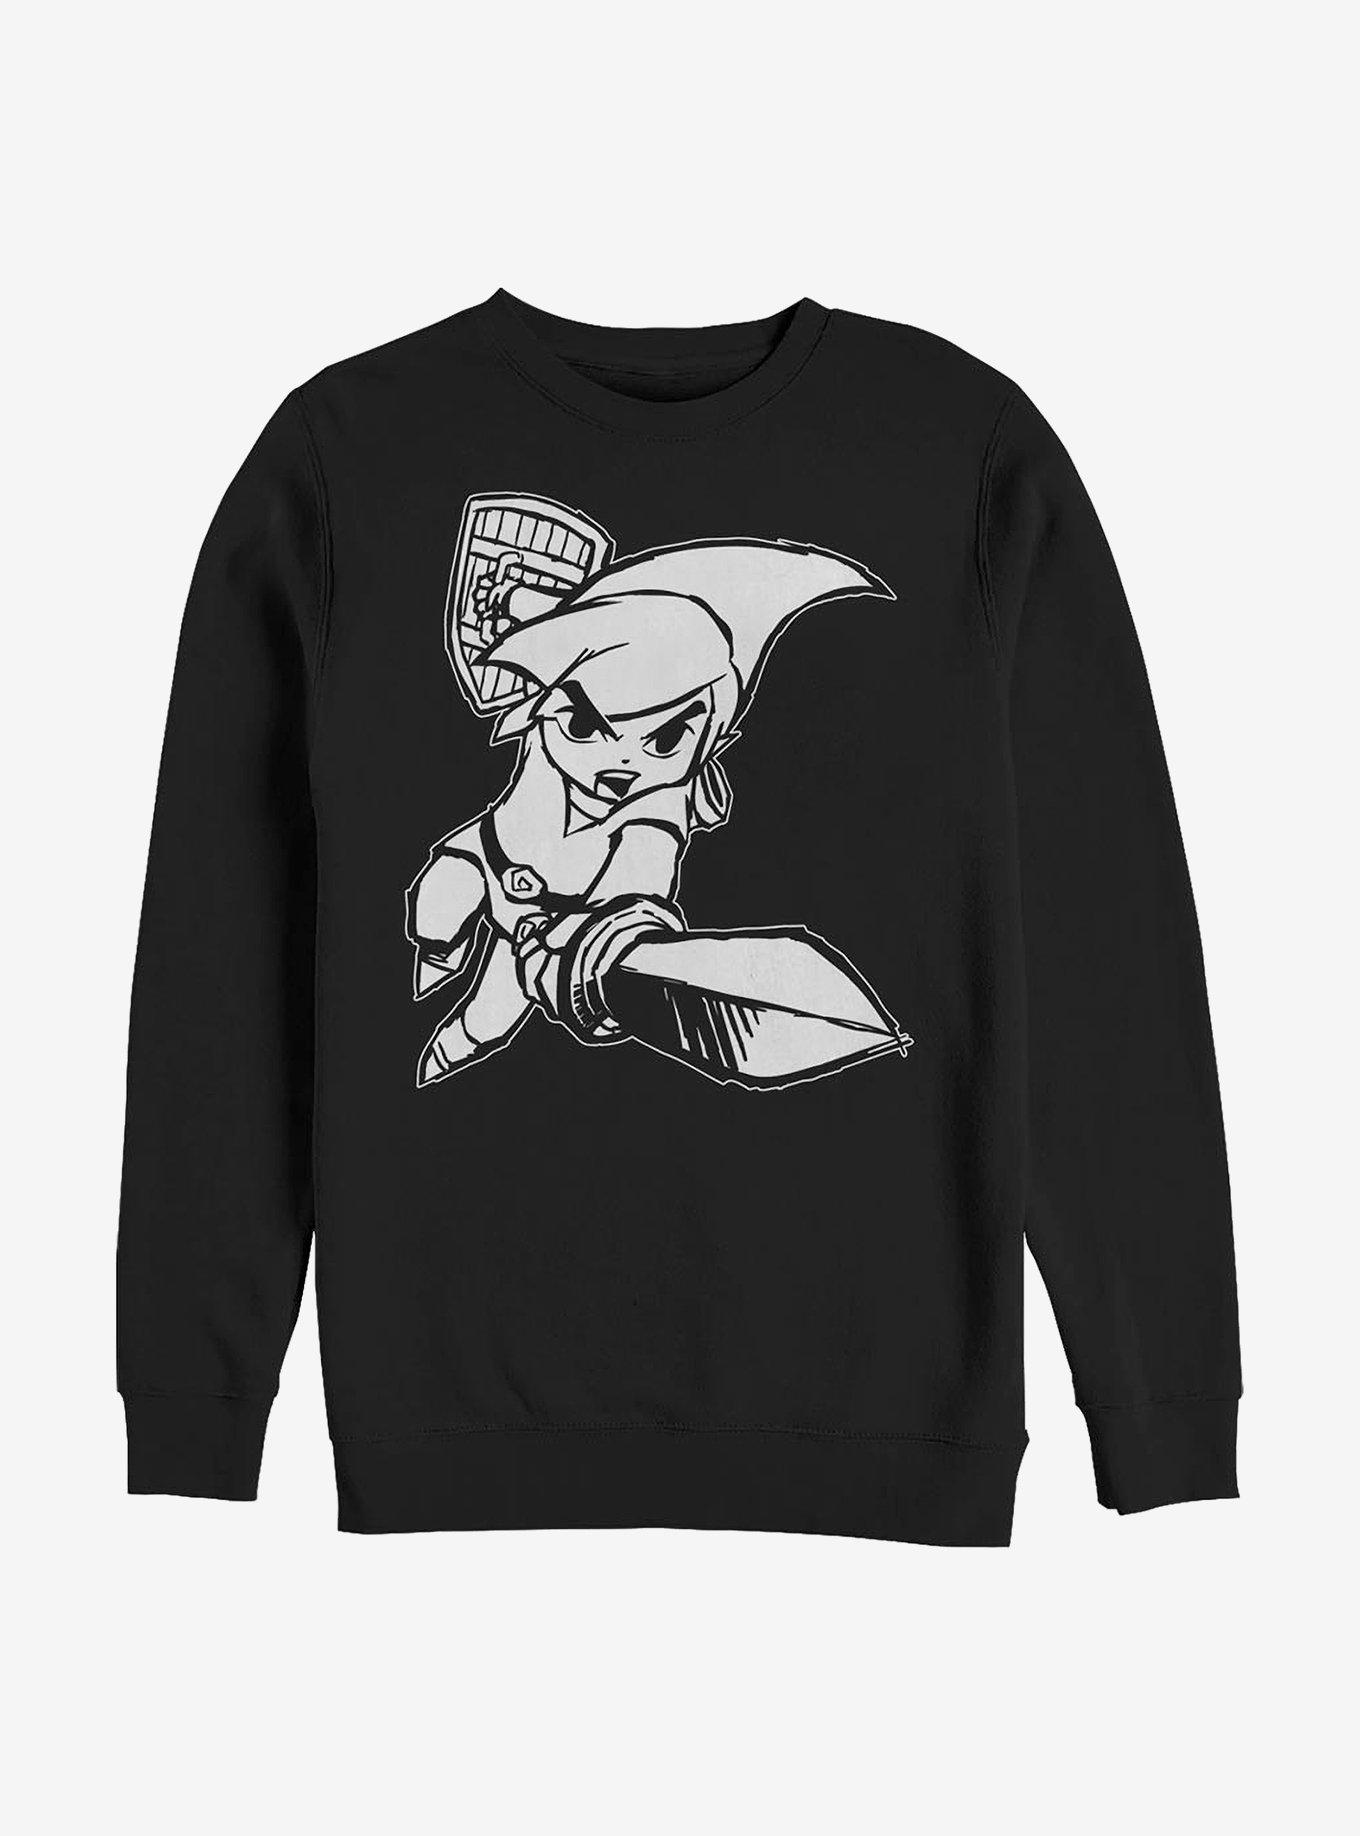 Nintendo Zelda The Wind Waker Crew Sweatshirt